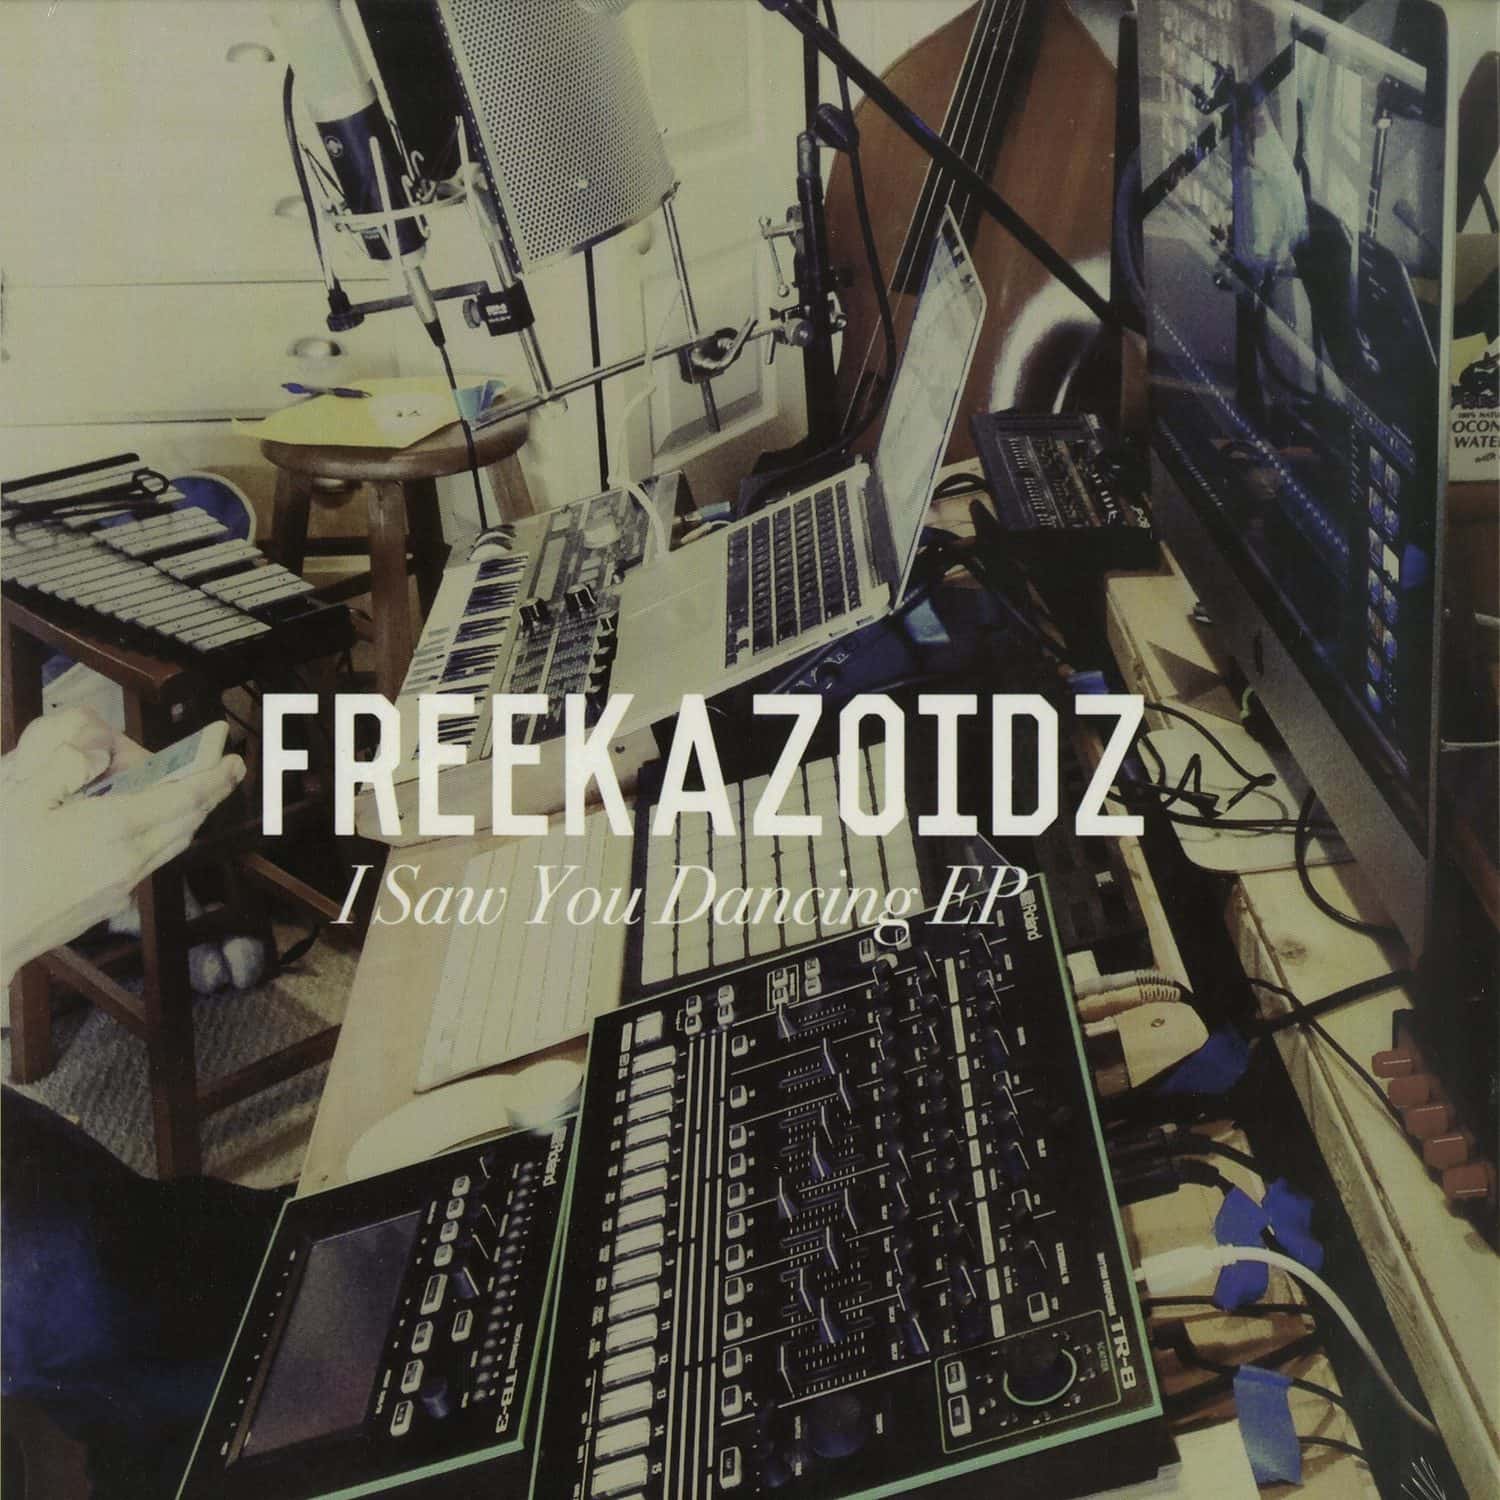 Freekazoidz - I SAW YOU DANCING EP